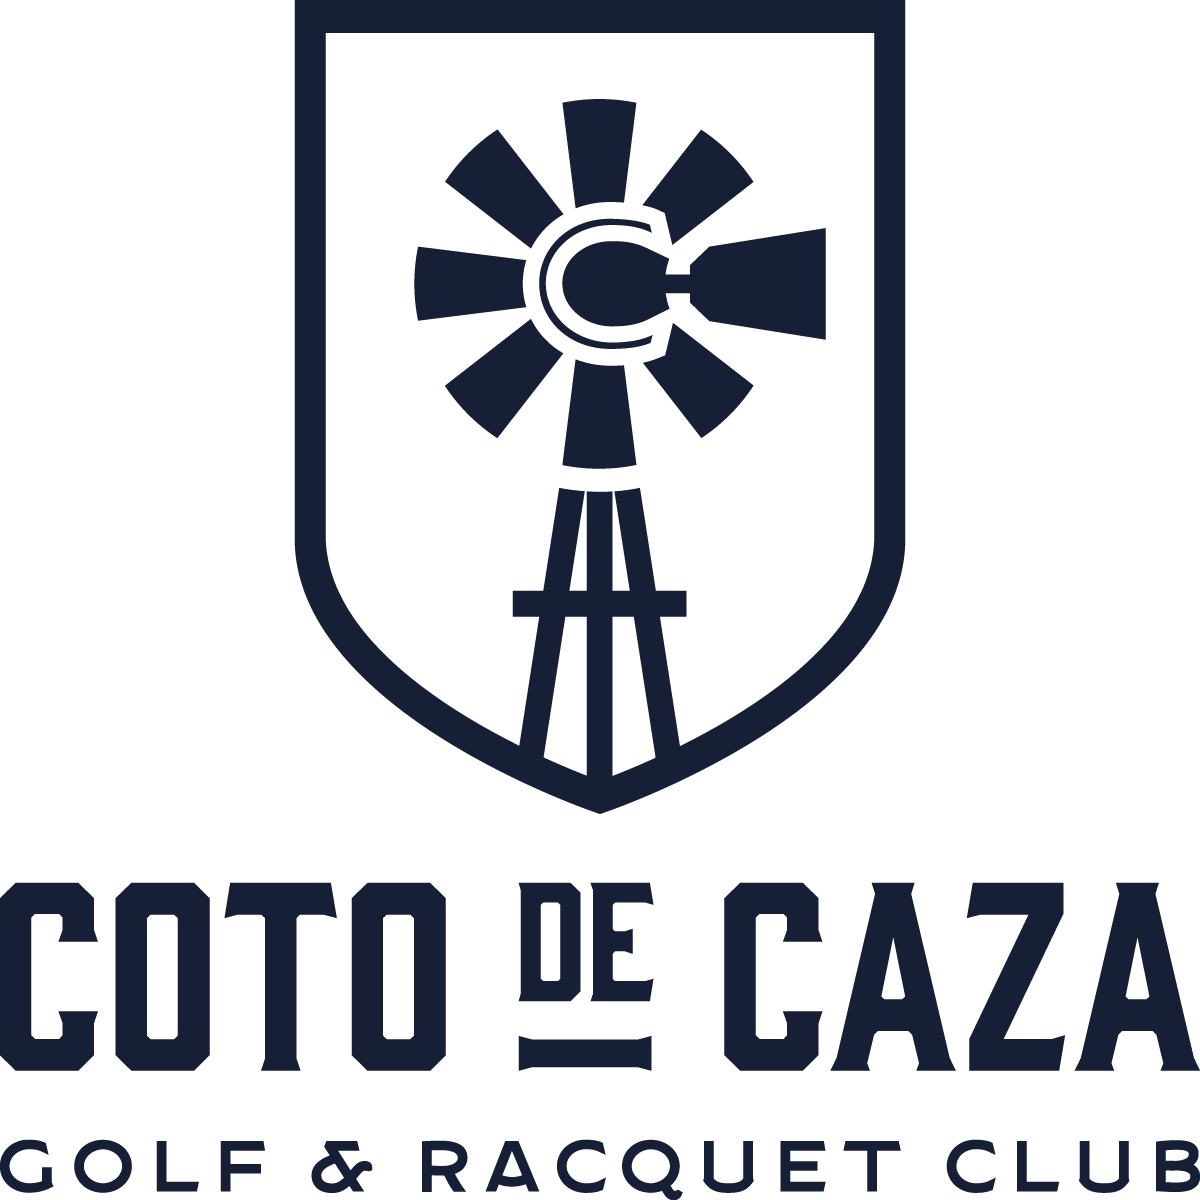 Coto de Caza Golf & Racquet Club